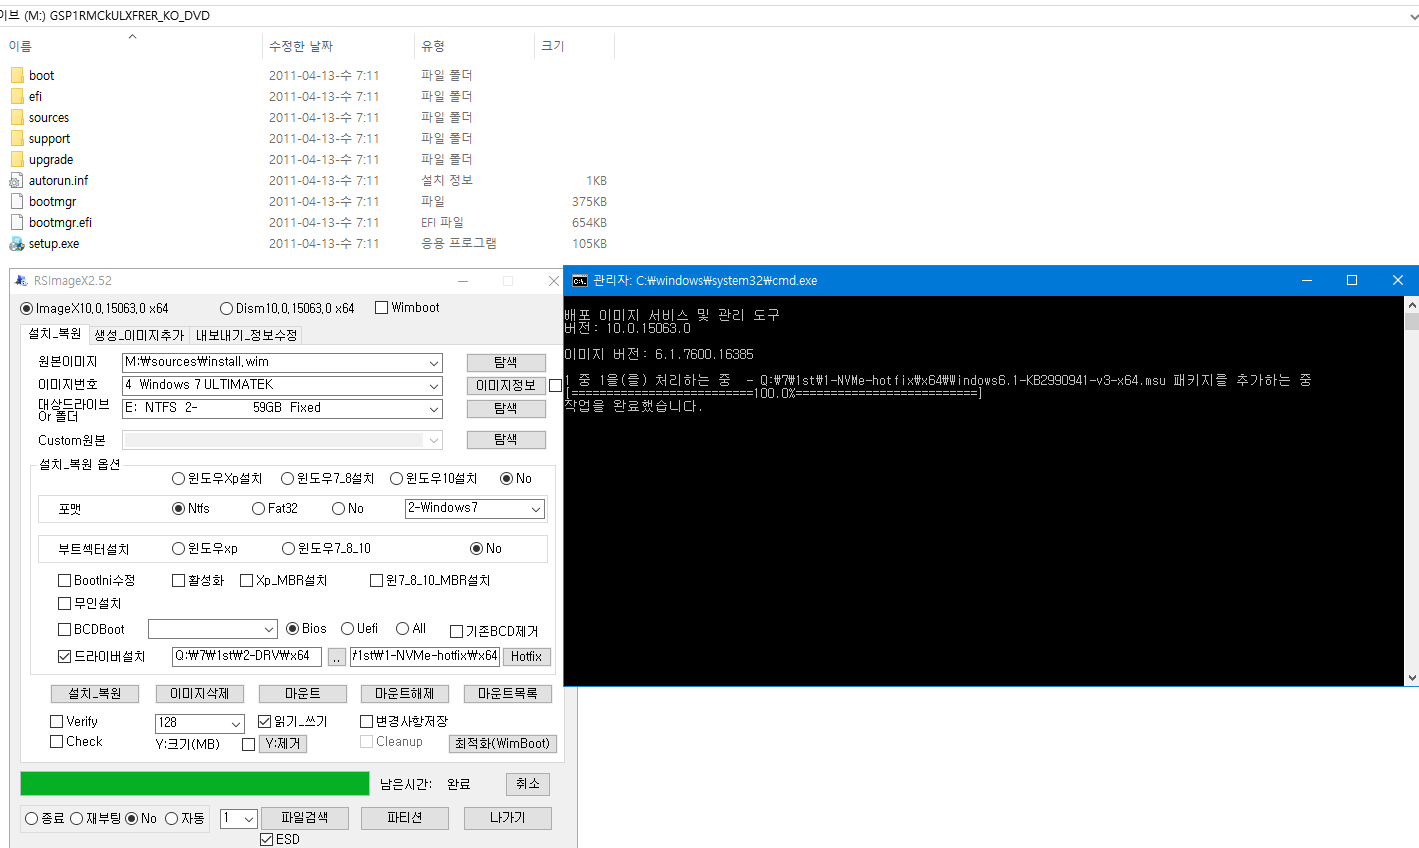 RSImageX 2.52버전에 윈도 업데이트 설치 기능이 추가 되었네요-드라이버 설치는 벌써 추가 되었습니다 - 창 닫아야 진행됩니다 2017-05-14_161101.png